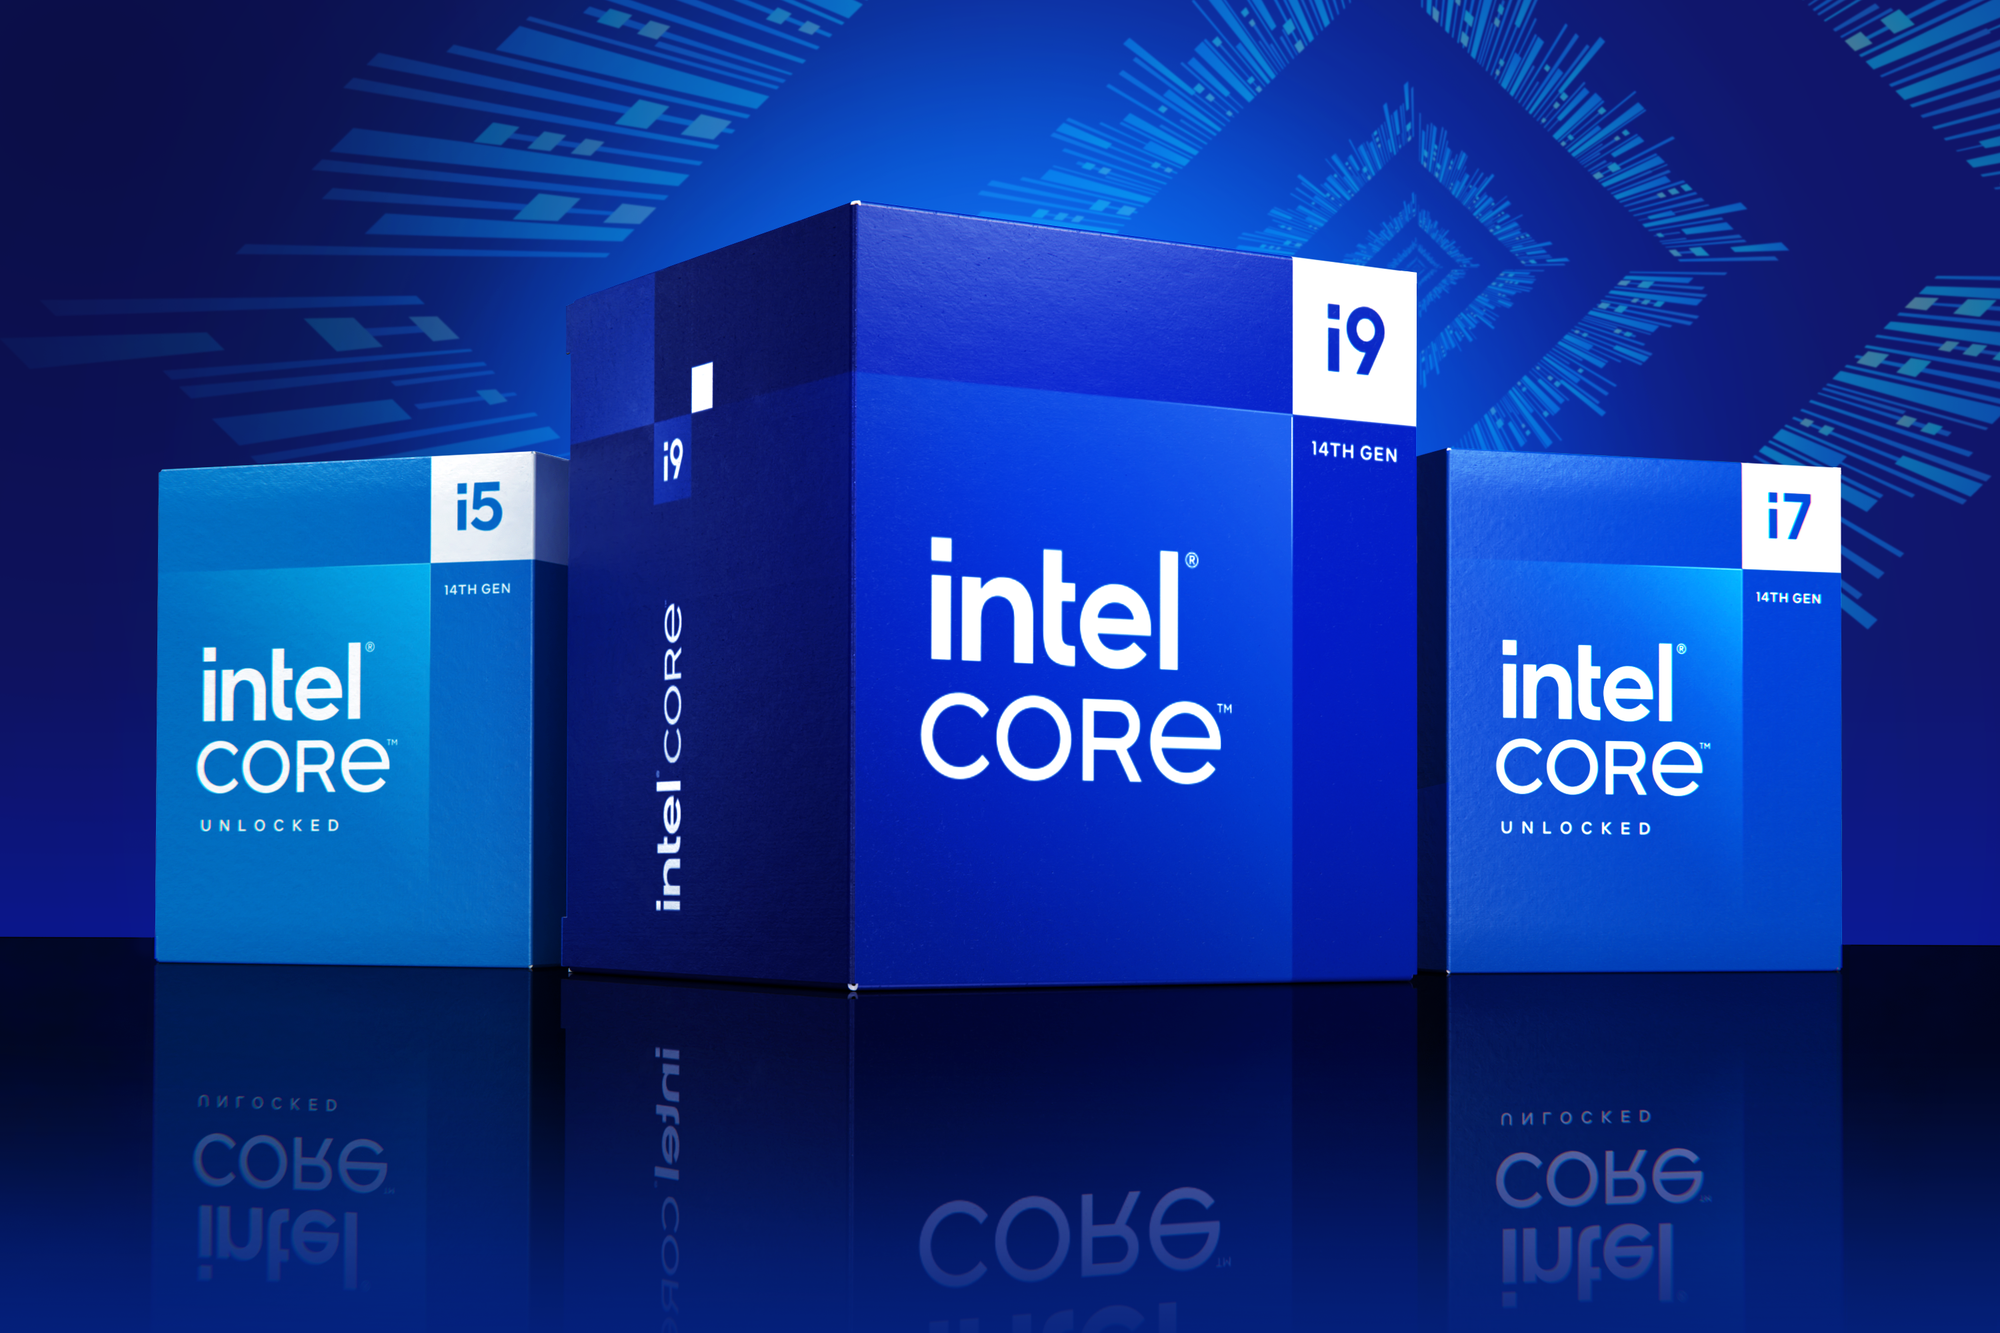 intel-core-processors-14-gen-01.png